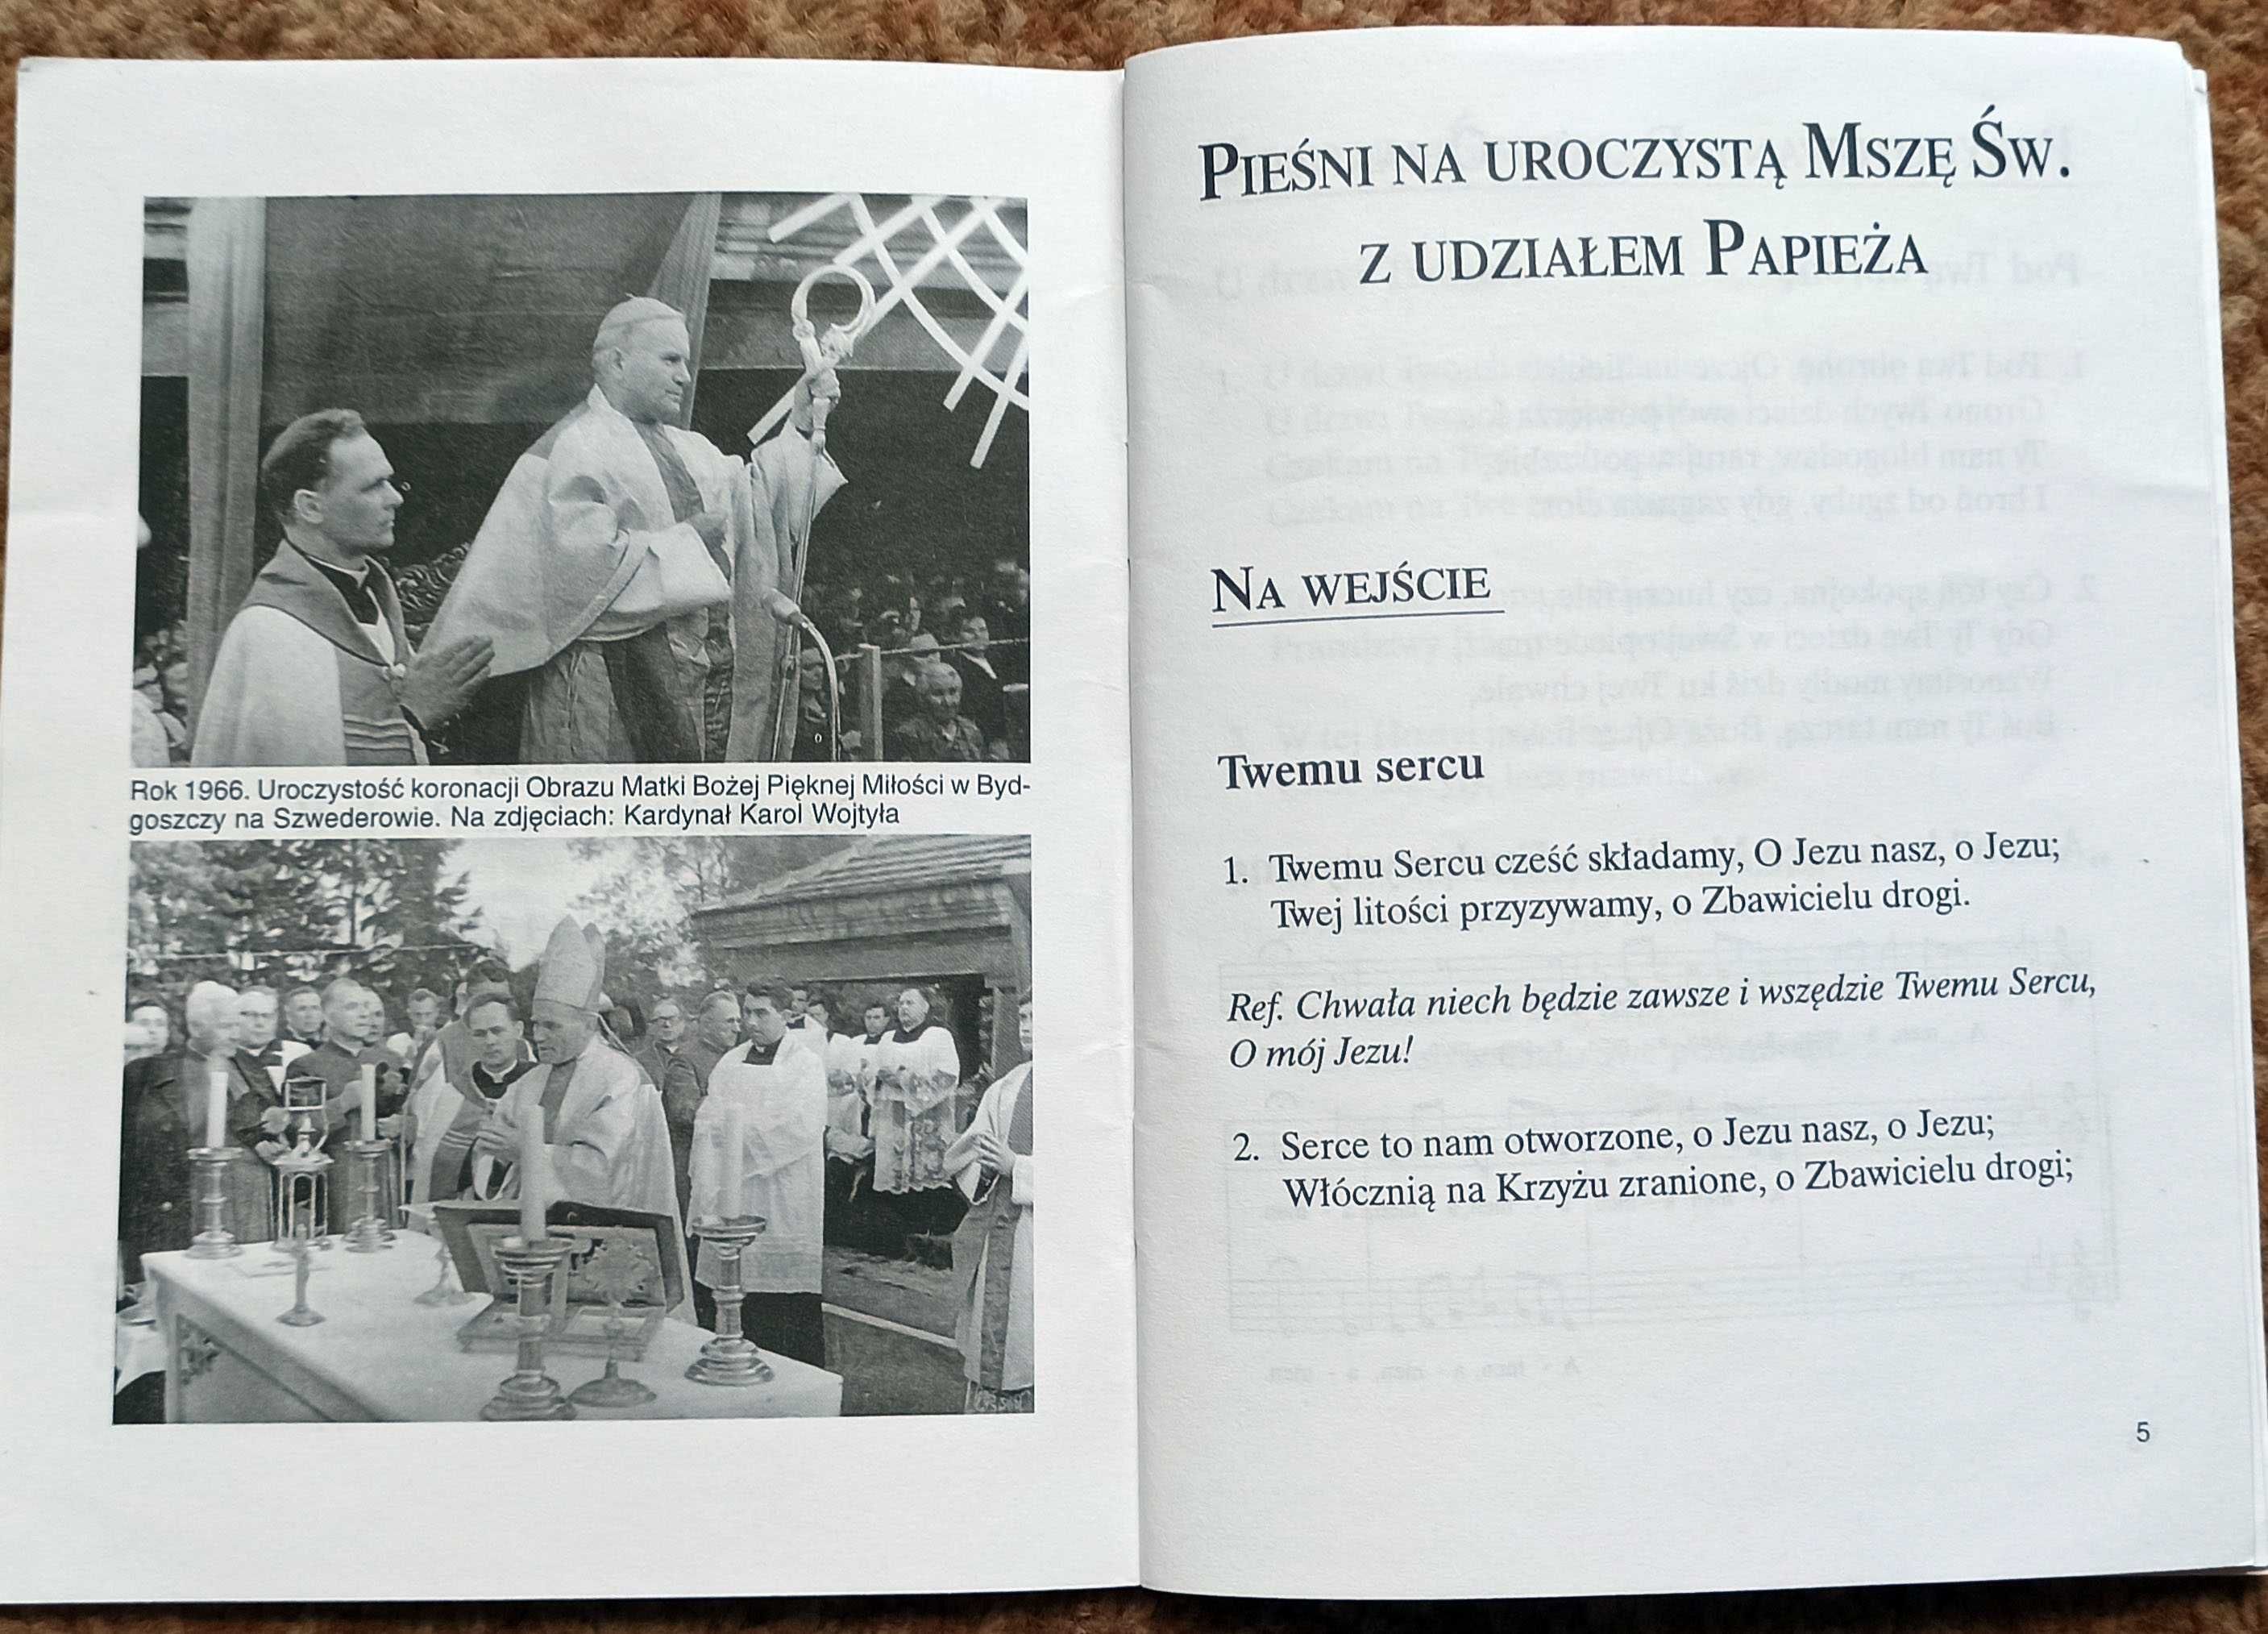 Śpiewnik Pielgrzyma Jan Paweł II  Bydgoszcz 7 czerwca 1999 roku